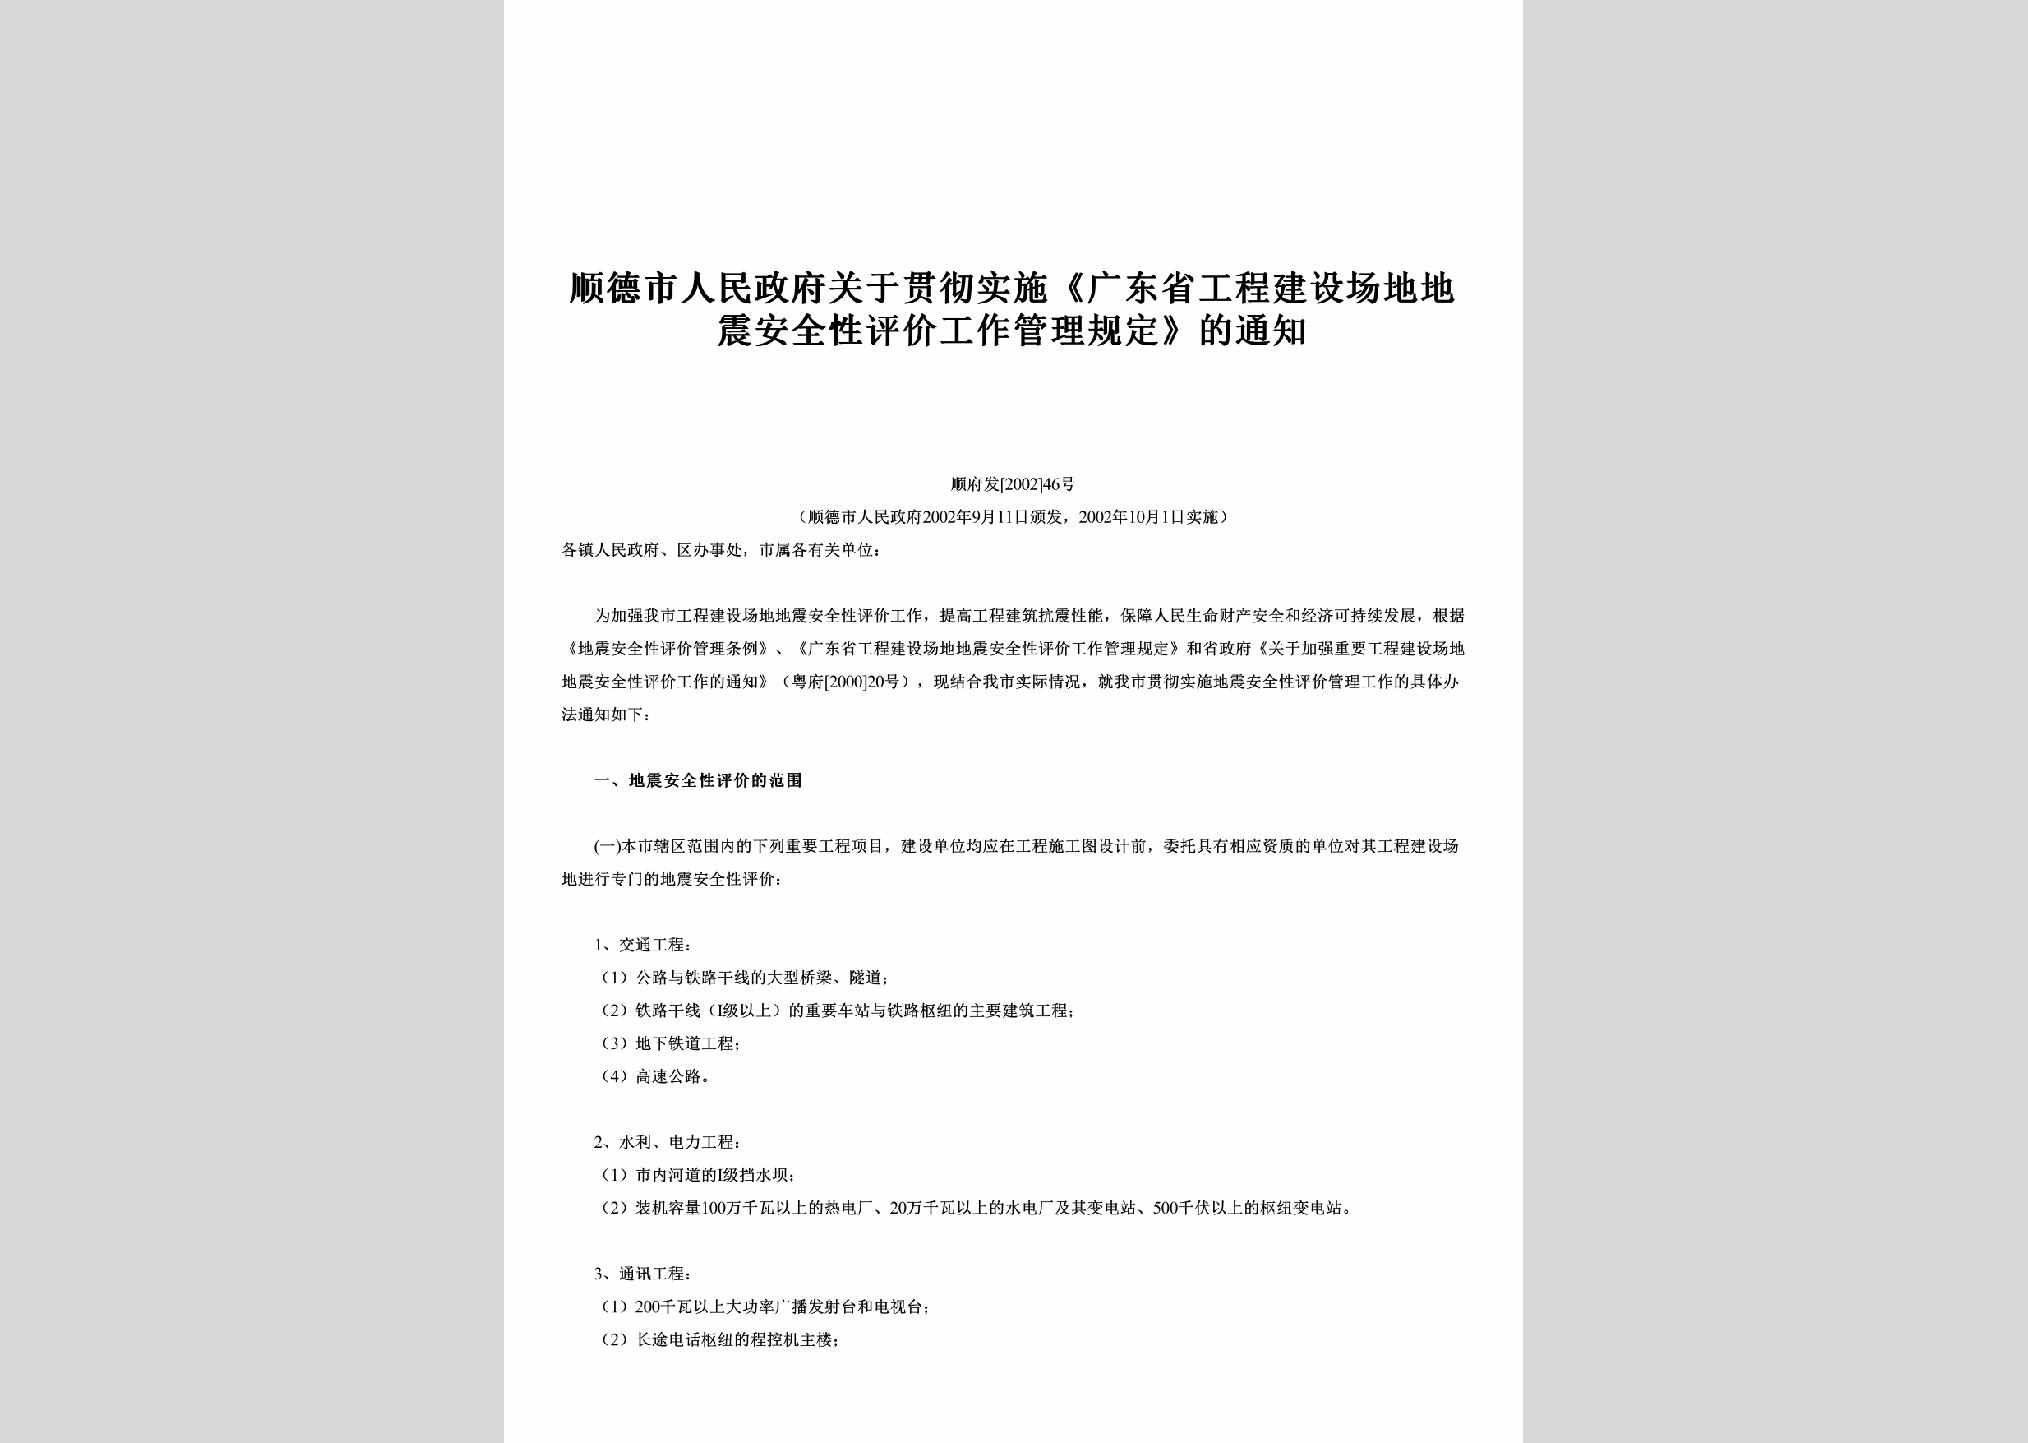 顺府发[2002]46号：关于贯彻实施《广东省工程建设场地地震安全性评价工作管理规定》的通知